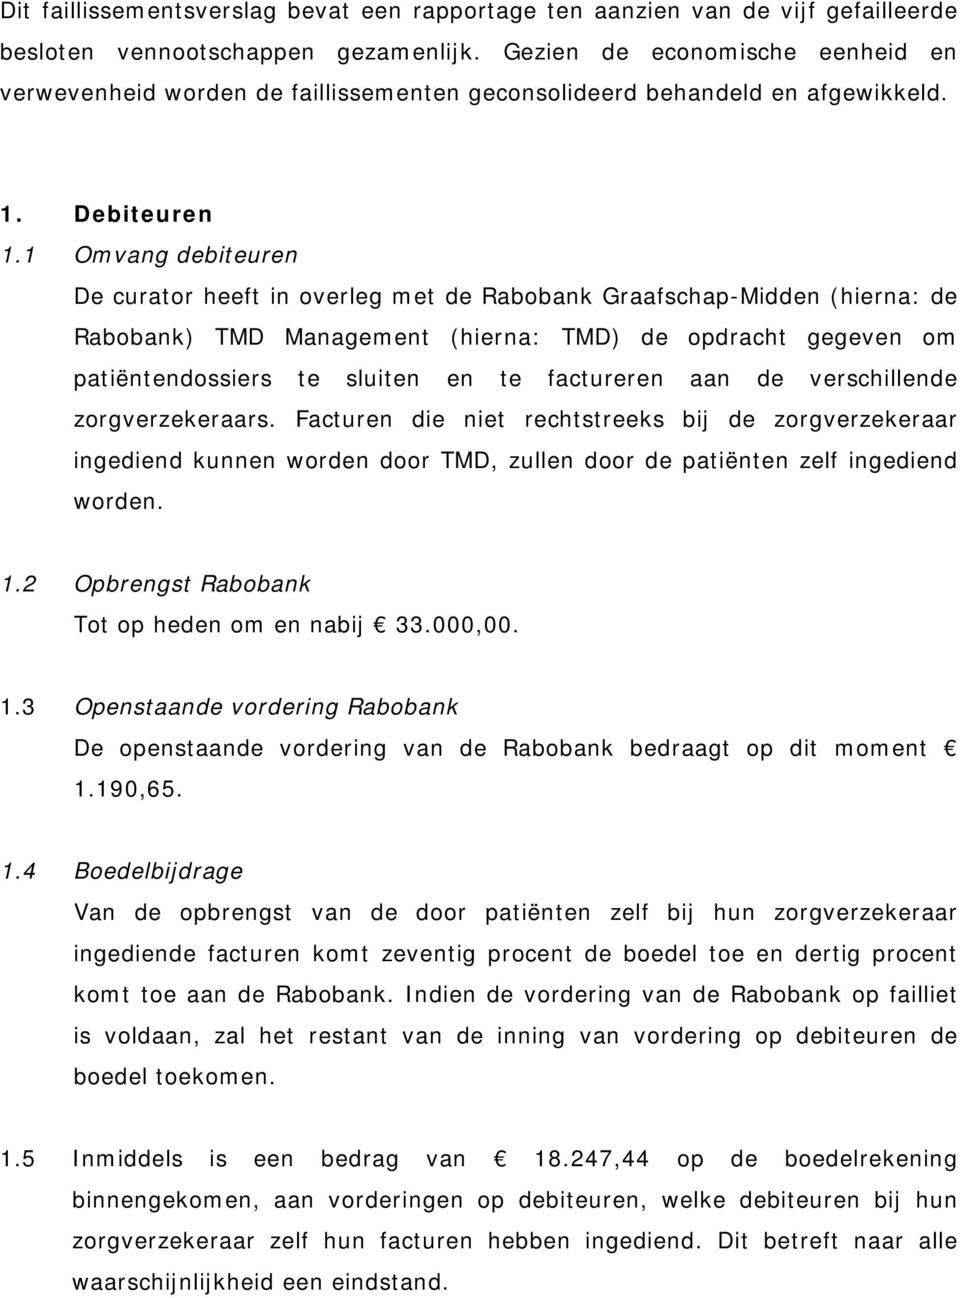 1 Omvang debiteuren De curator heeft in overleg met de Rabobank Graafschap-Midden (hierna: de Rabobank) TMD Management (hierna: TMD) de opdracht gegeven om patiëntendossiers te sluiten en te